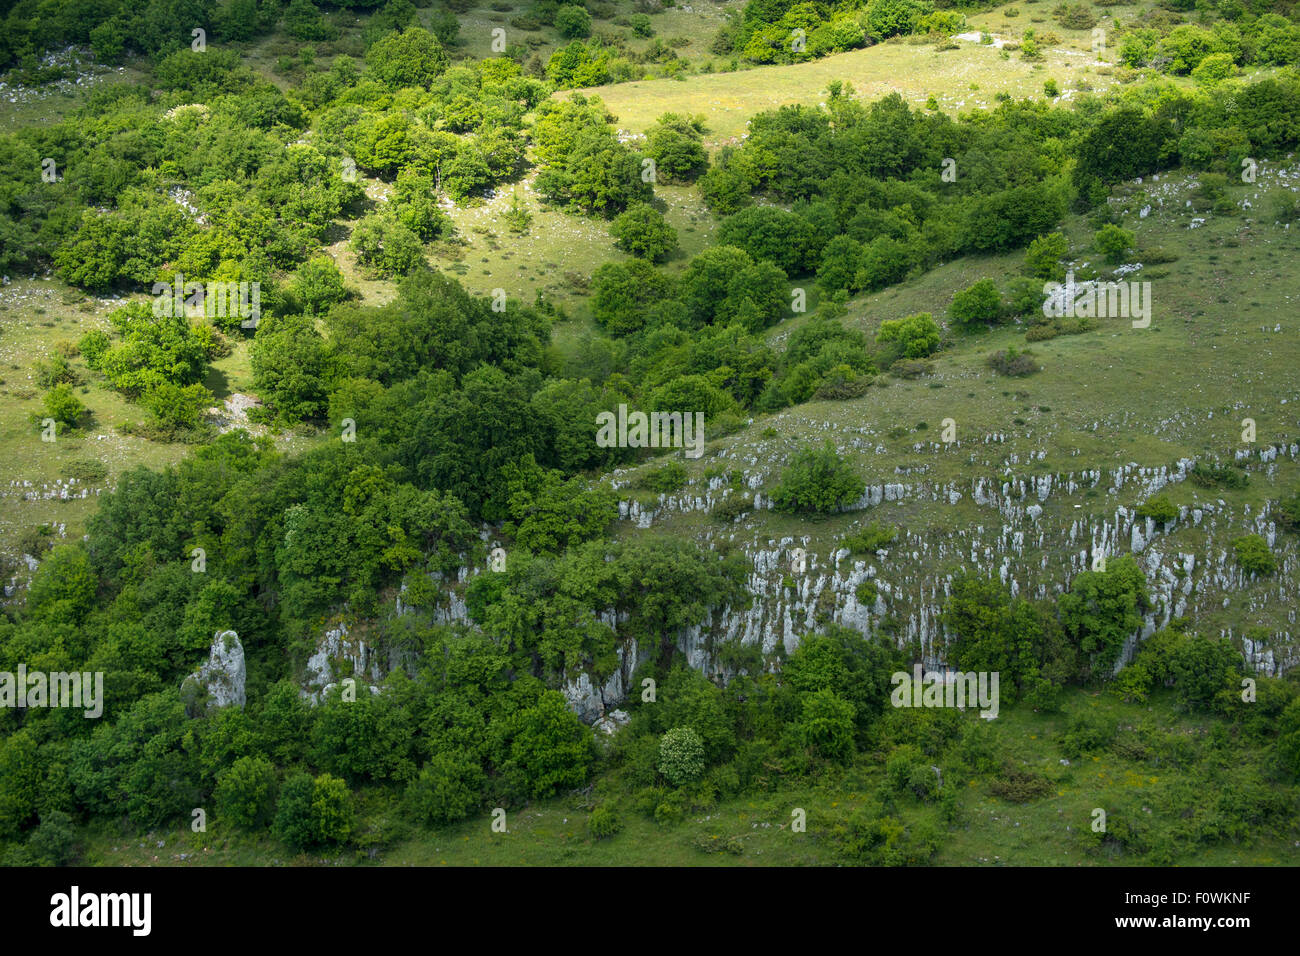 El paisaje de la zona central de los Apeninos rewilding, Parque Nacional de los Abruzos, Lacio y Molise, Italia, junio de 2014. Foto de stock